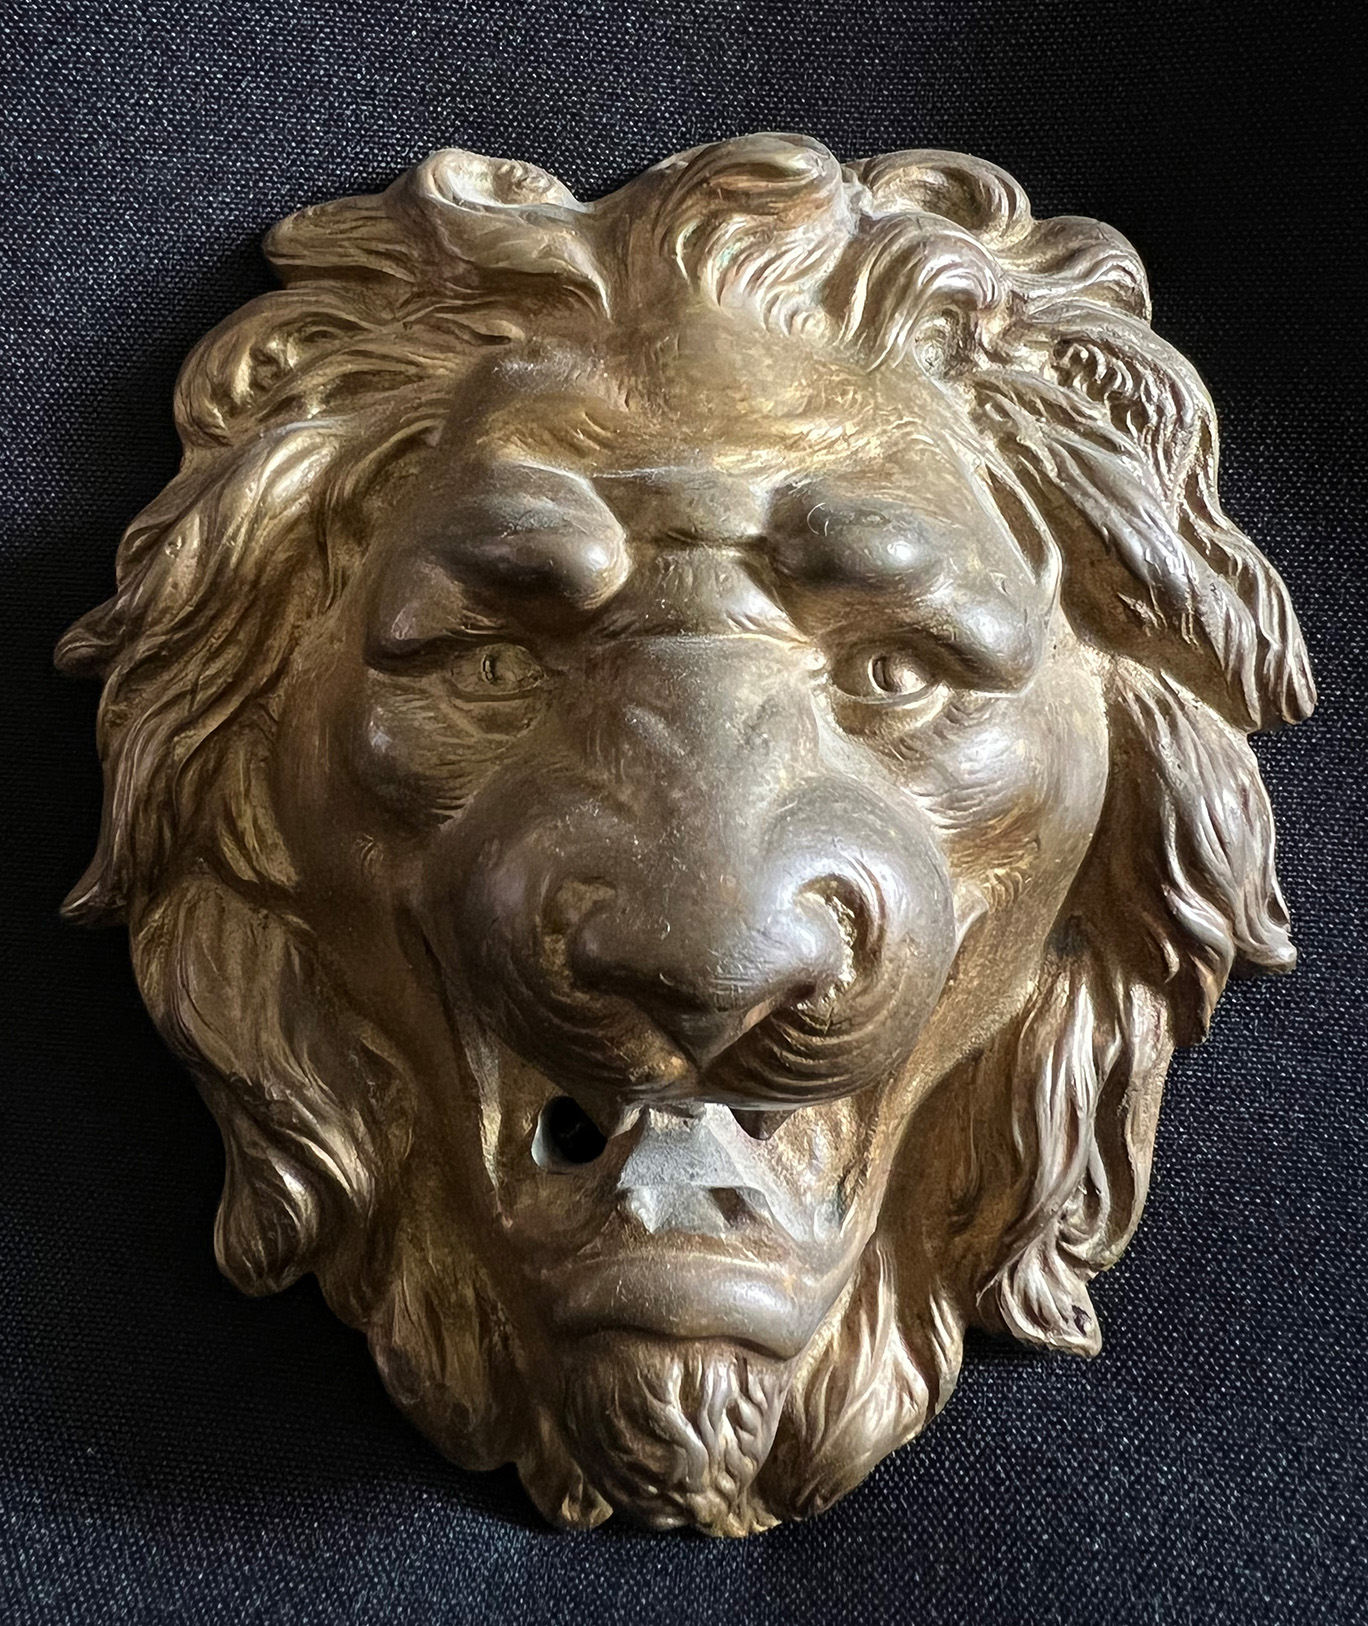 Löwenkopf, Historismus, 19. Jh., wohl als Türknauf verwendet mit Ring durch das Maul, 14 x 12 cm